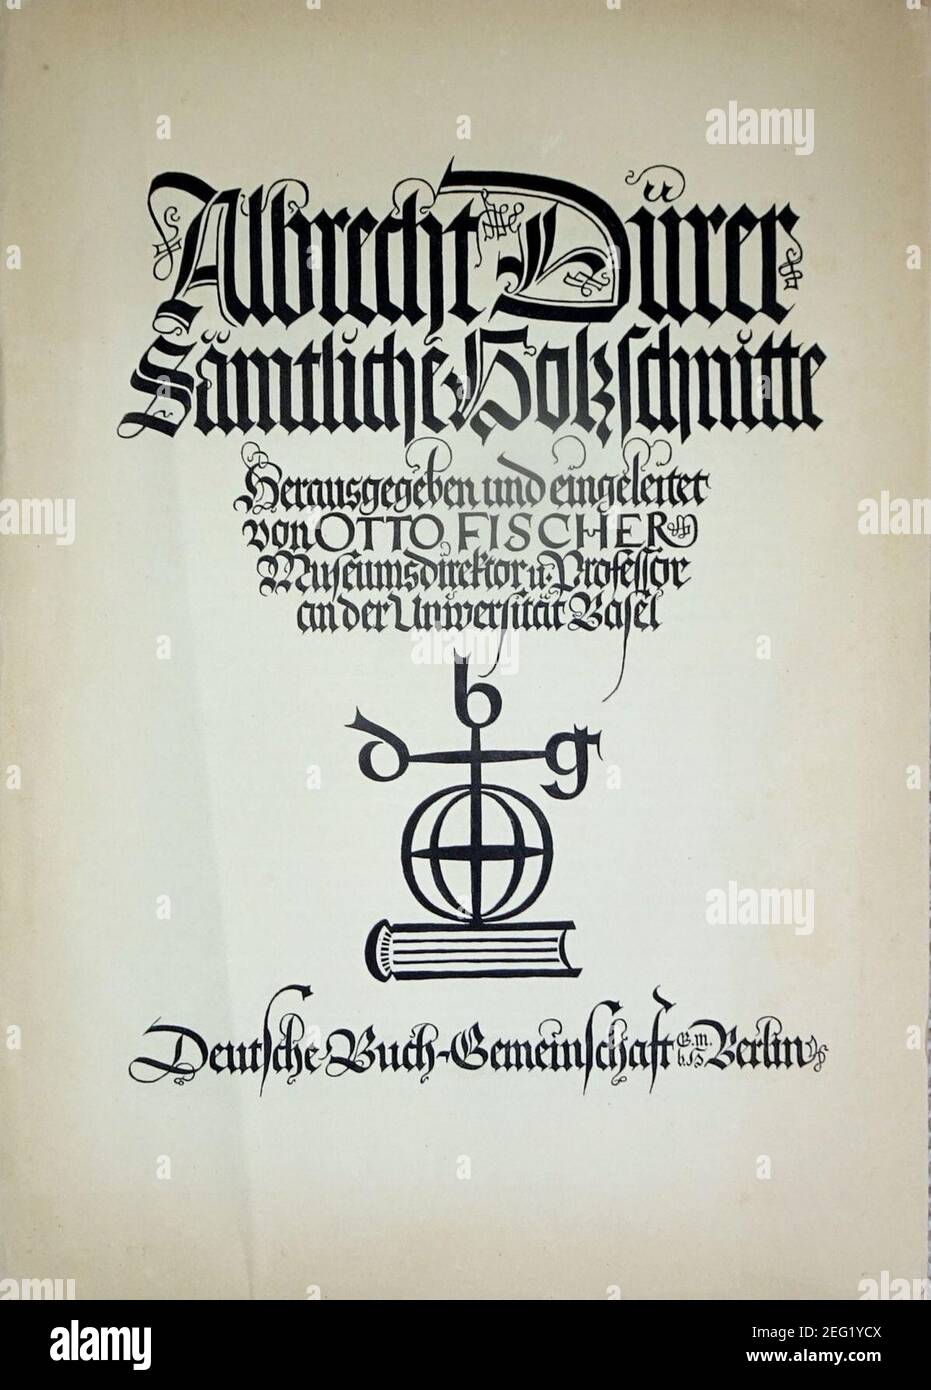 Otto-Fischer Albrecht-Dürer-Sämtliche-Holzschnitte - title page. Stock Photo